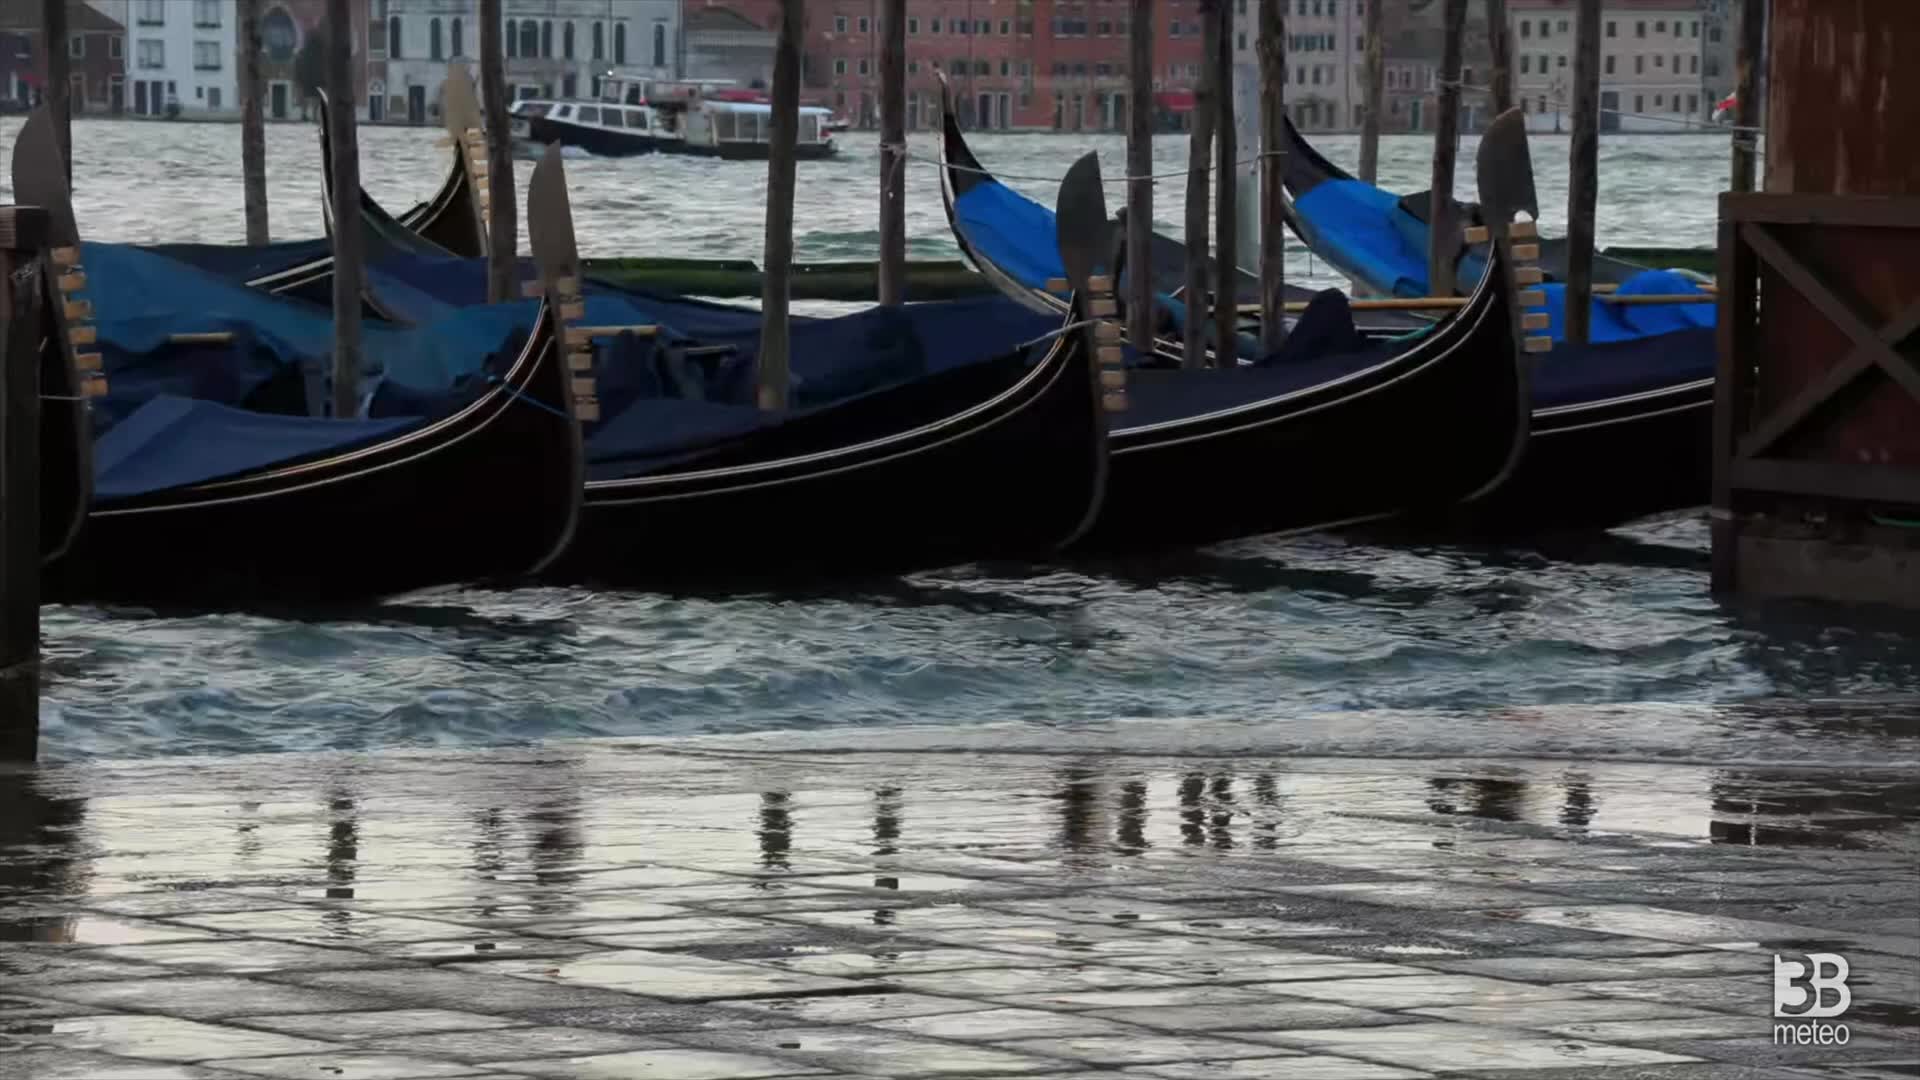 Acqua alta a Venezia, picco 90cm: parte P.za San Marco allagata